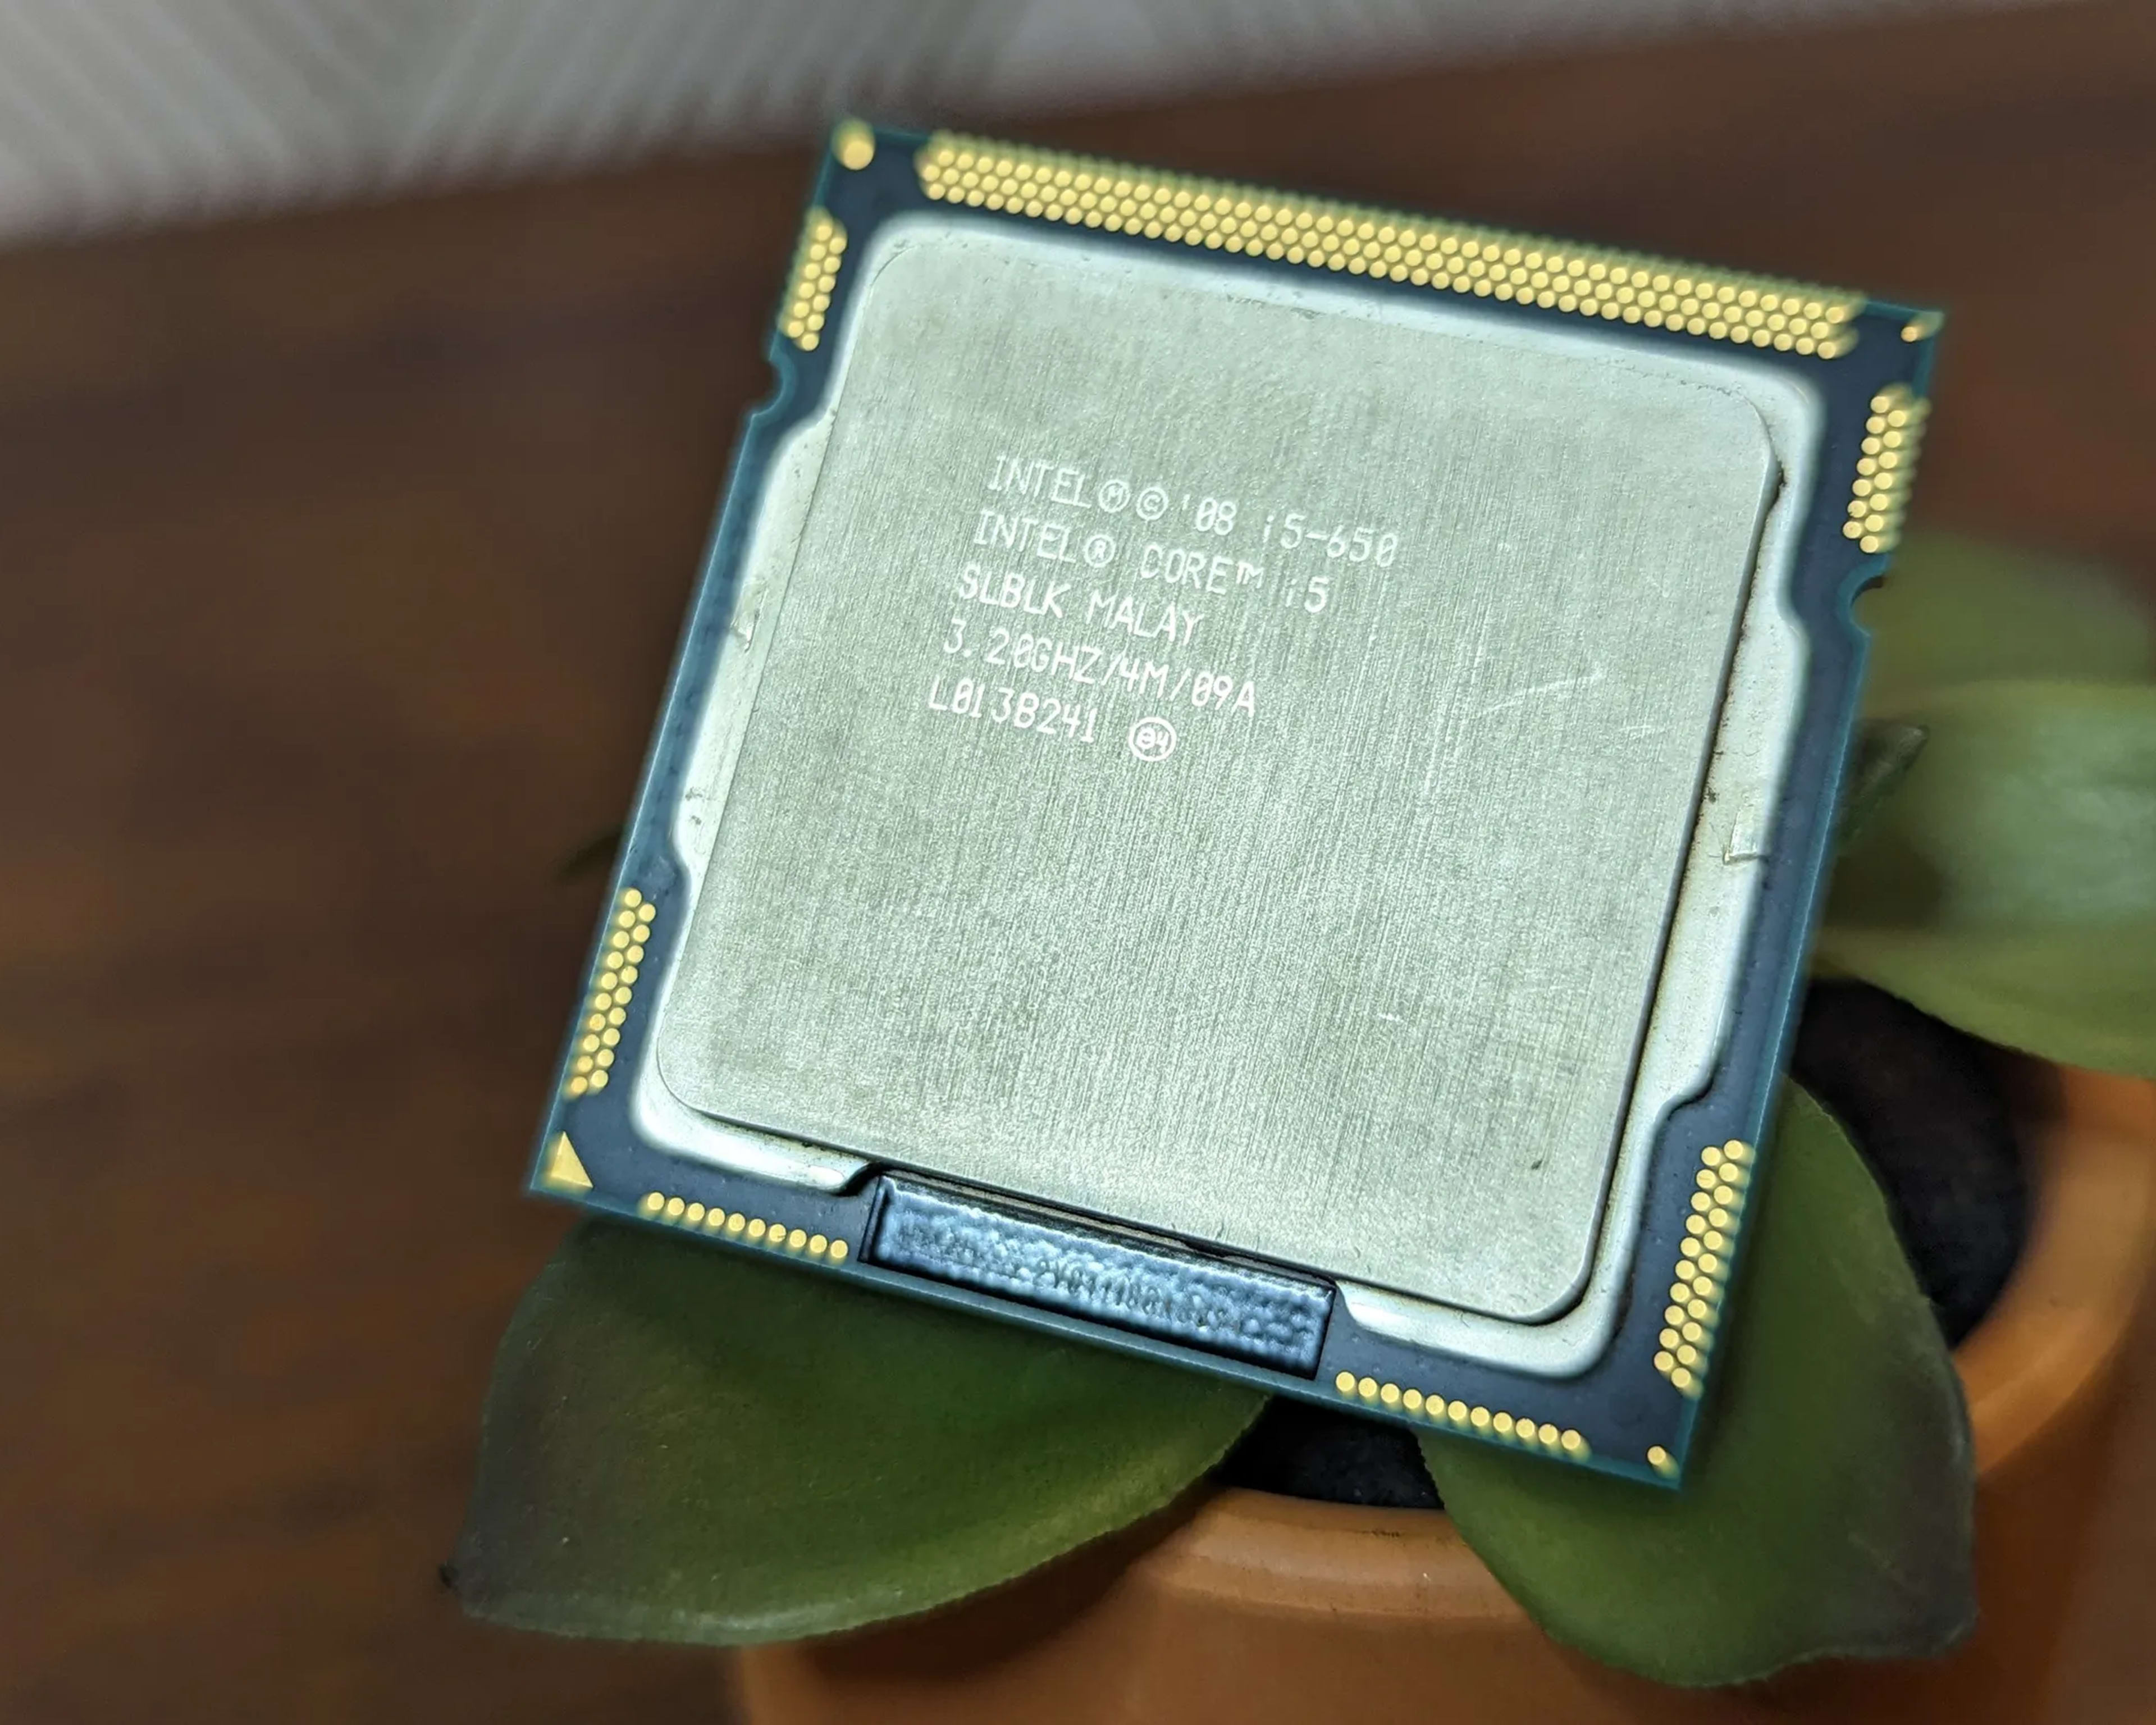 Intel Core i5-650 3.2 GHz 2.5GT/s LGA1156 Desktop CPU Processor